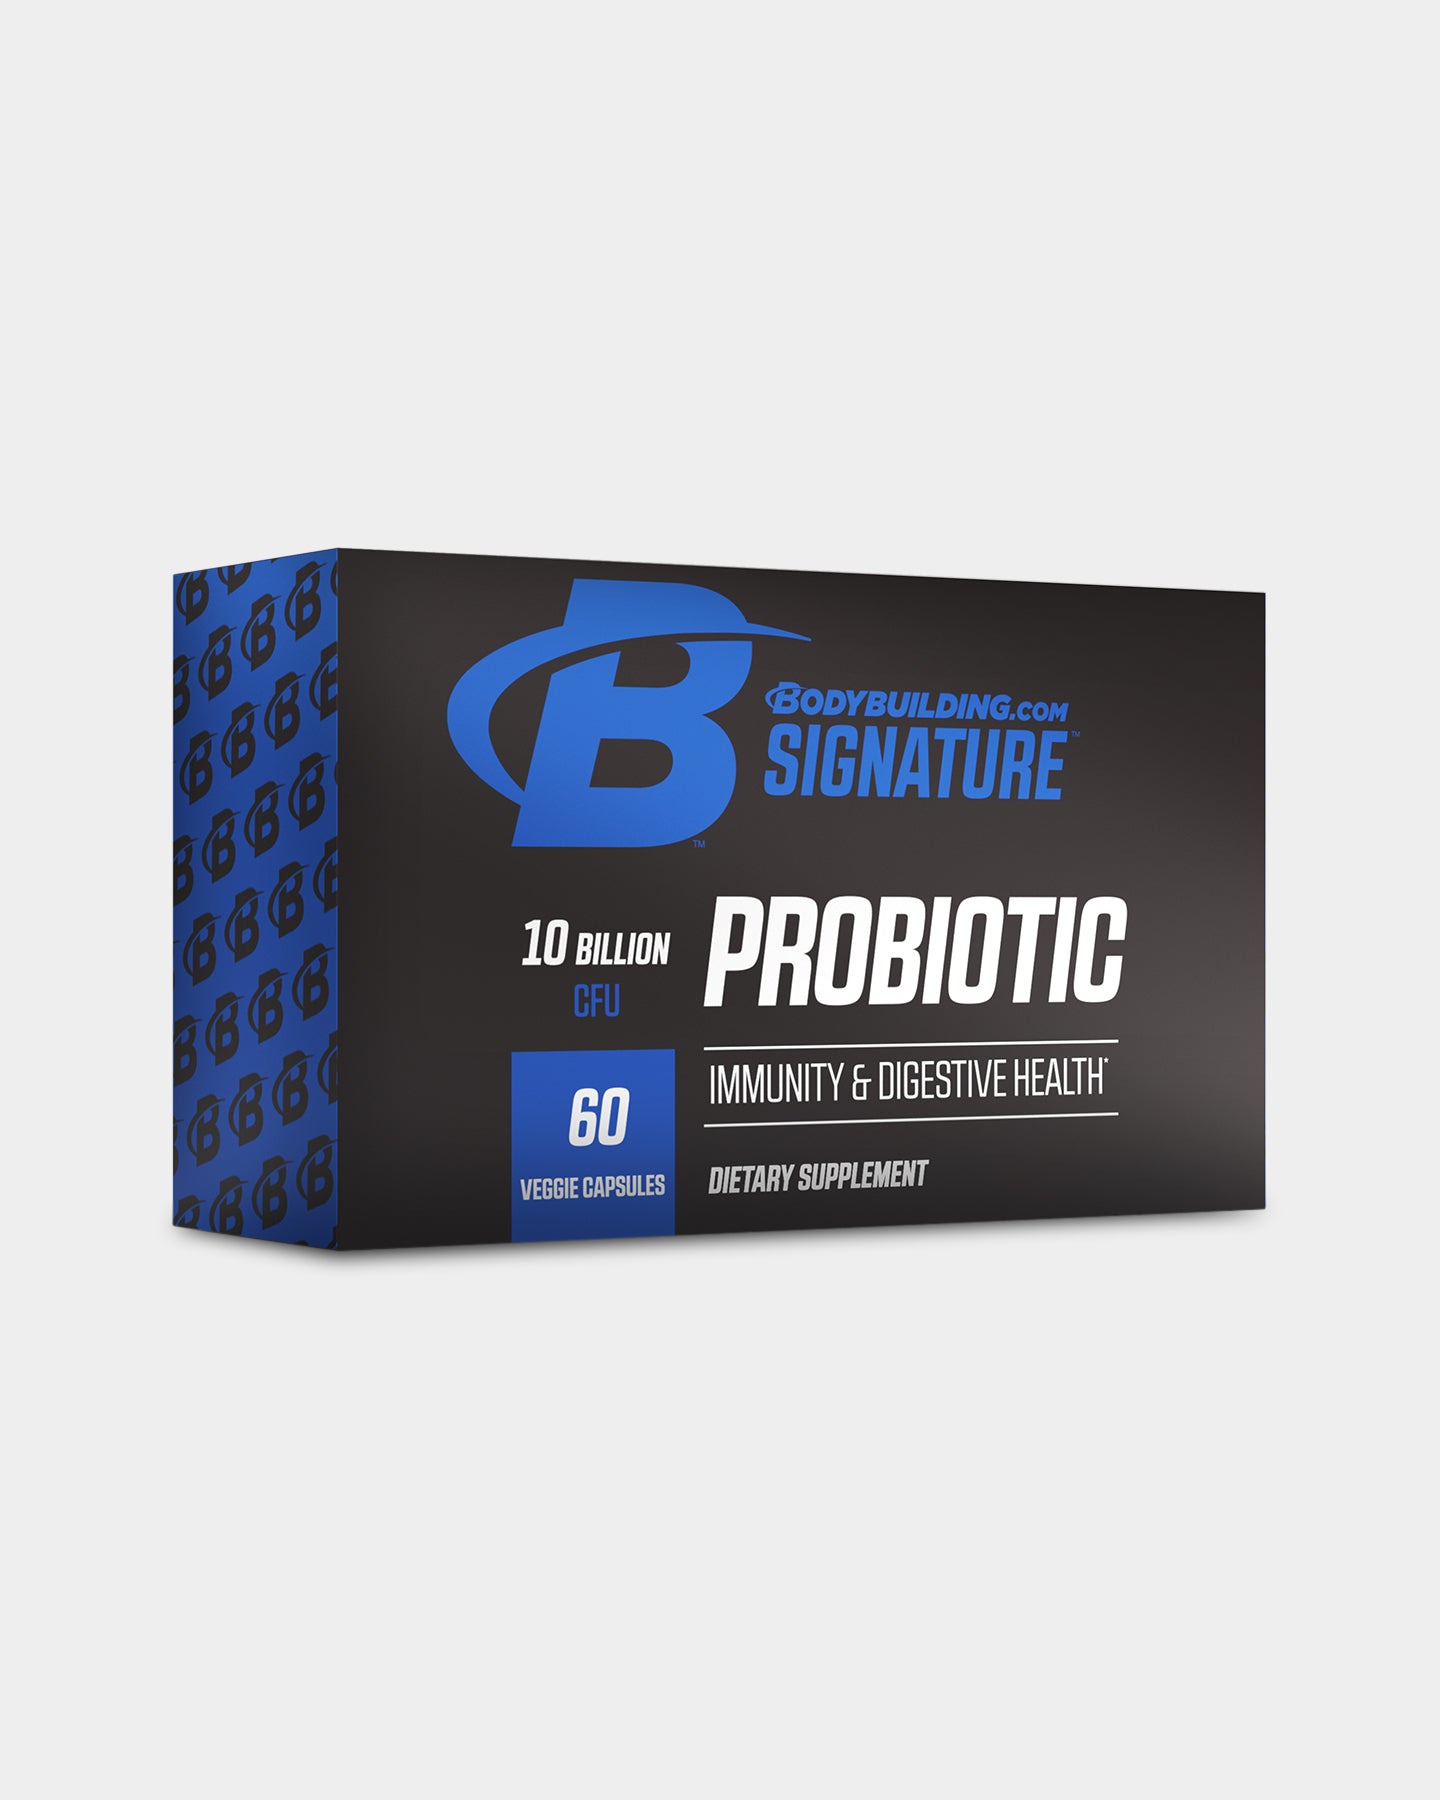 Image of Bodybuilding.com Signature Probiotic